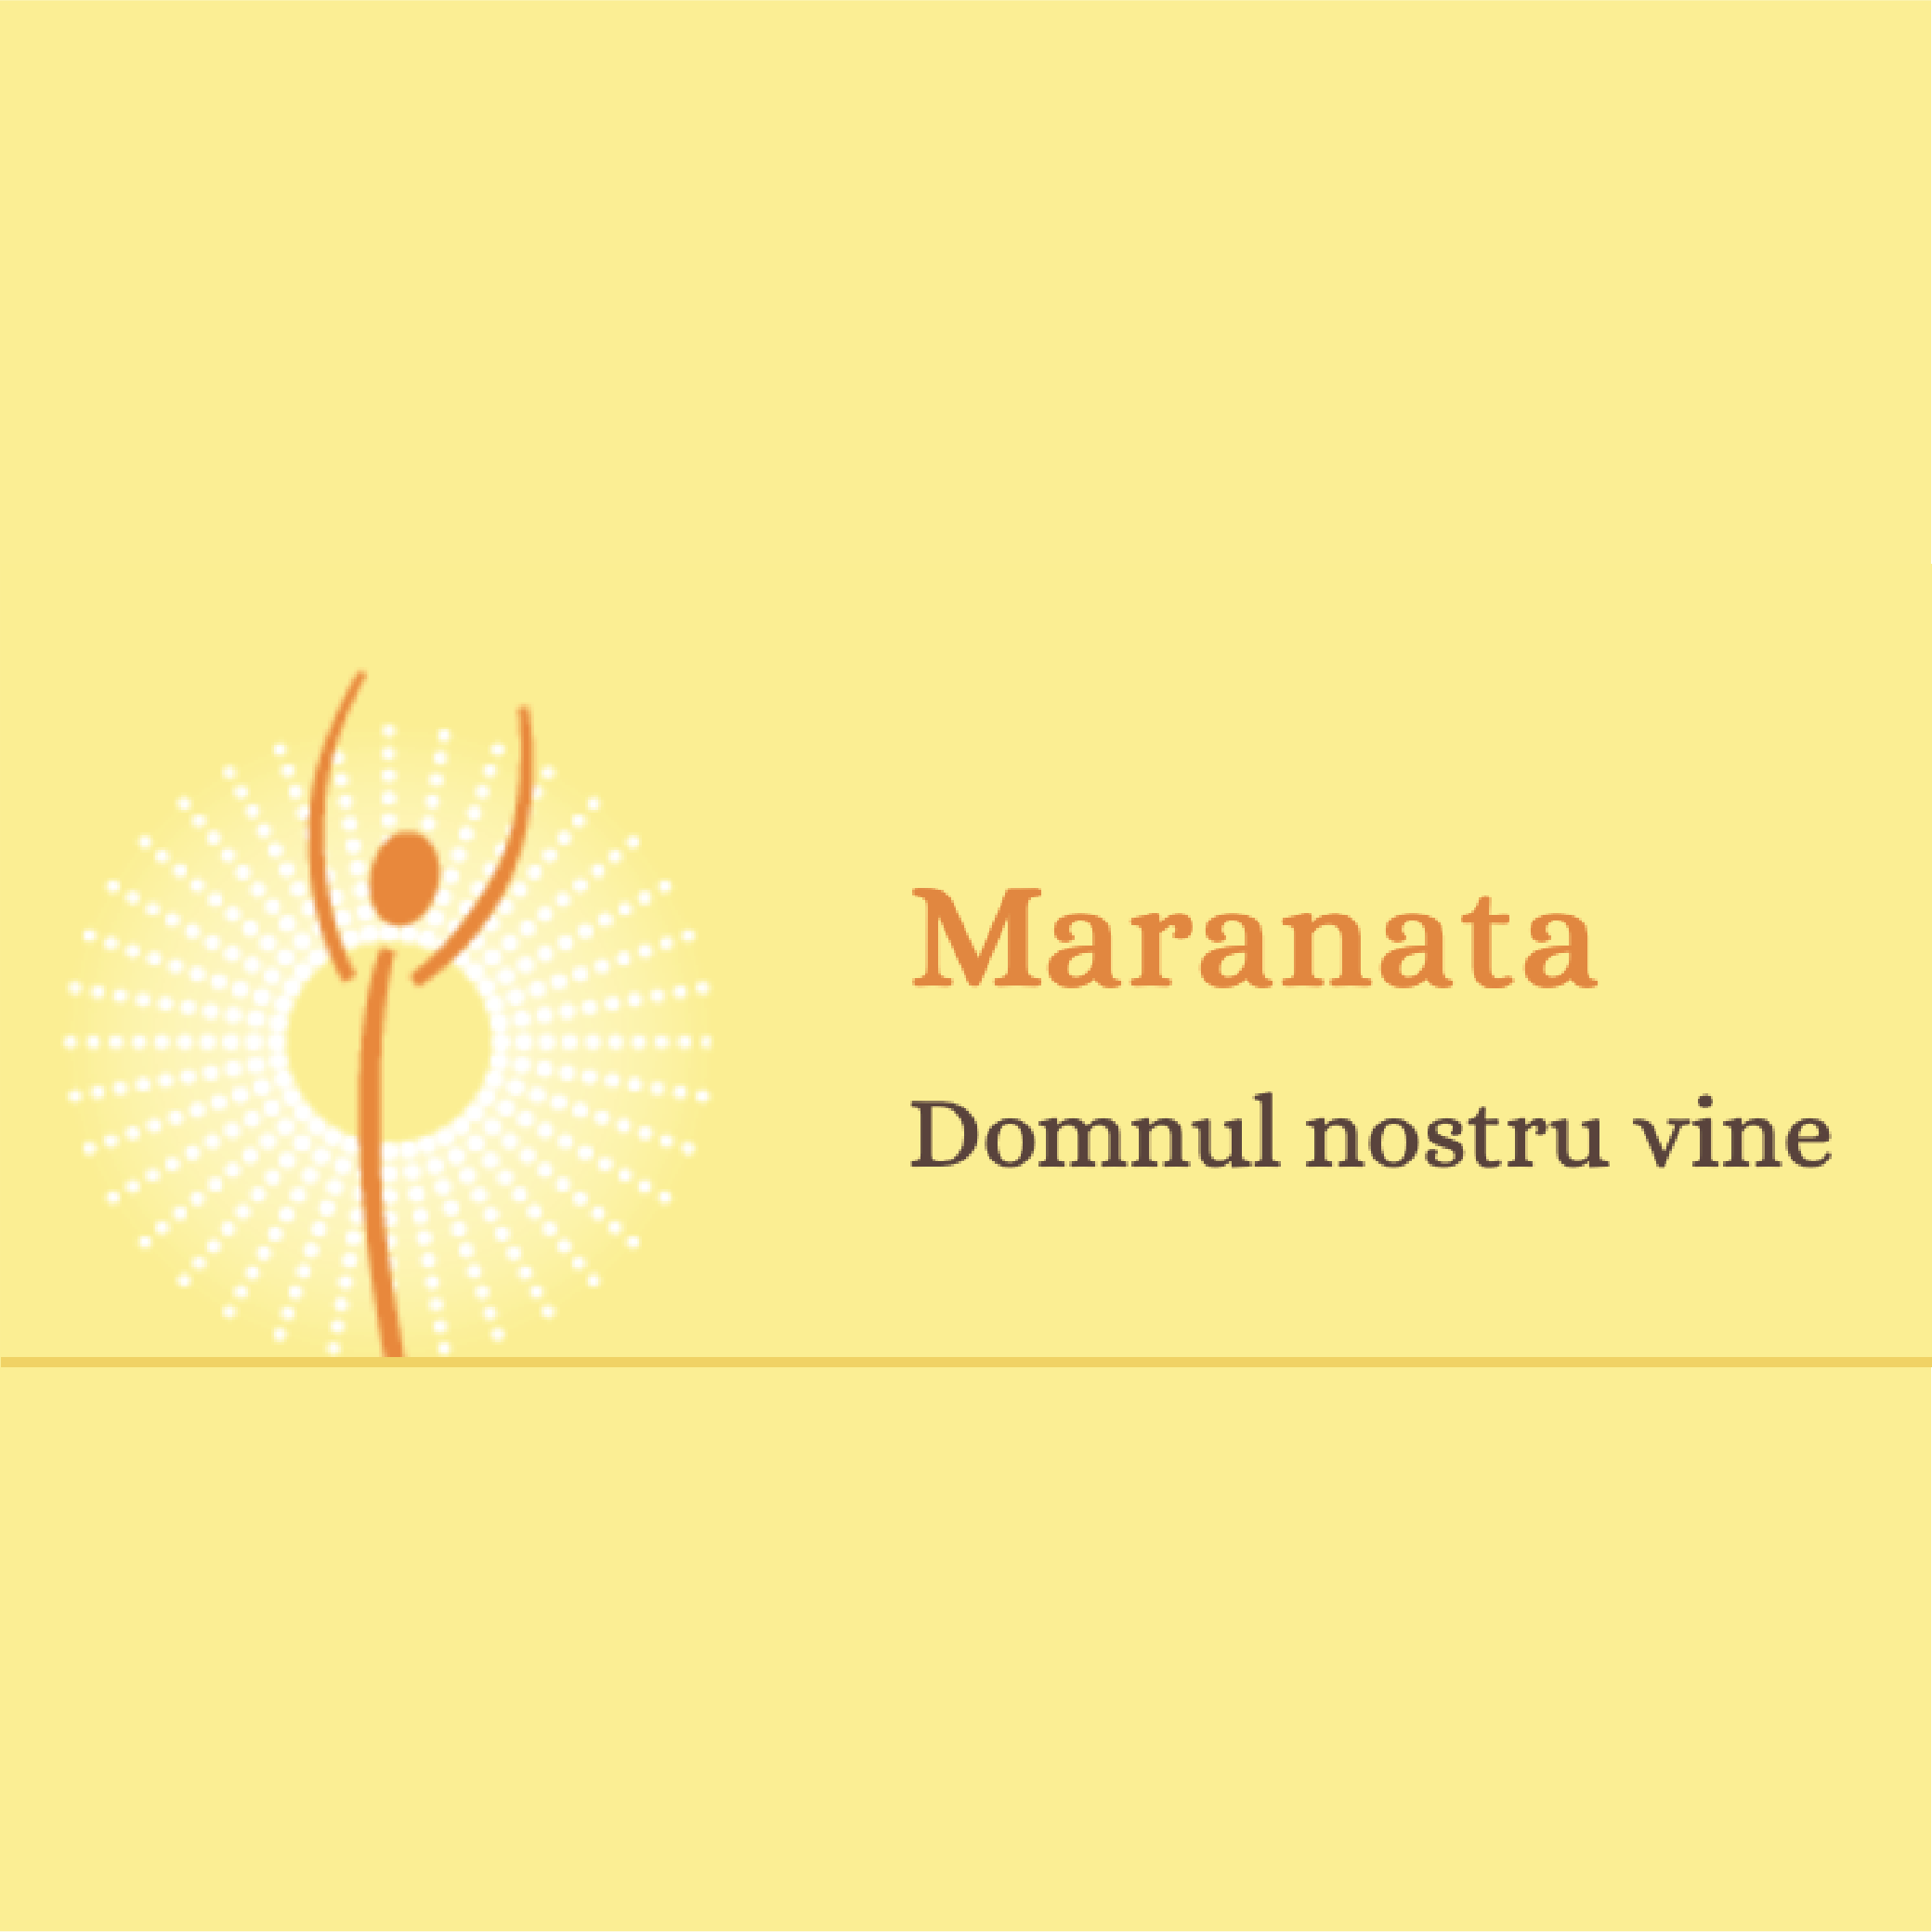 Maranata - Udine